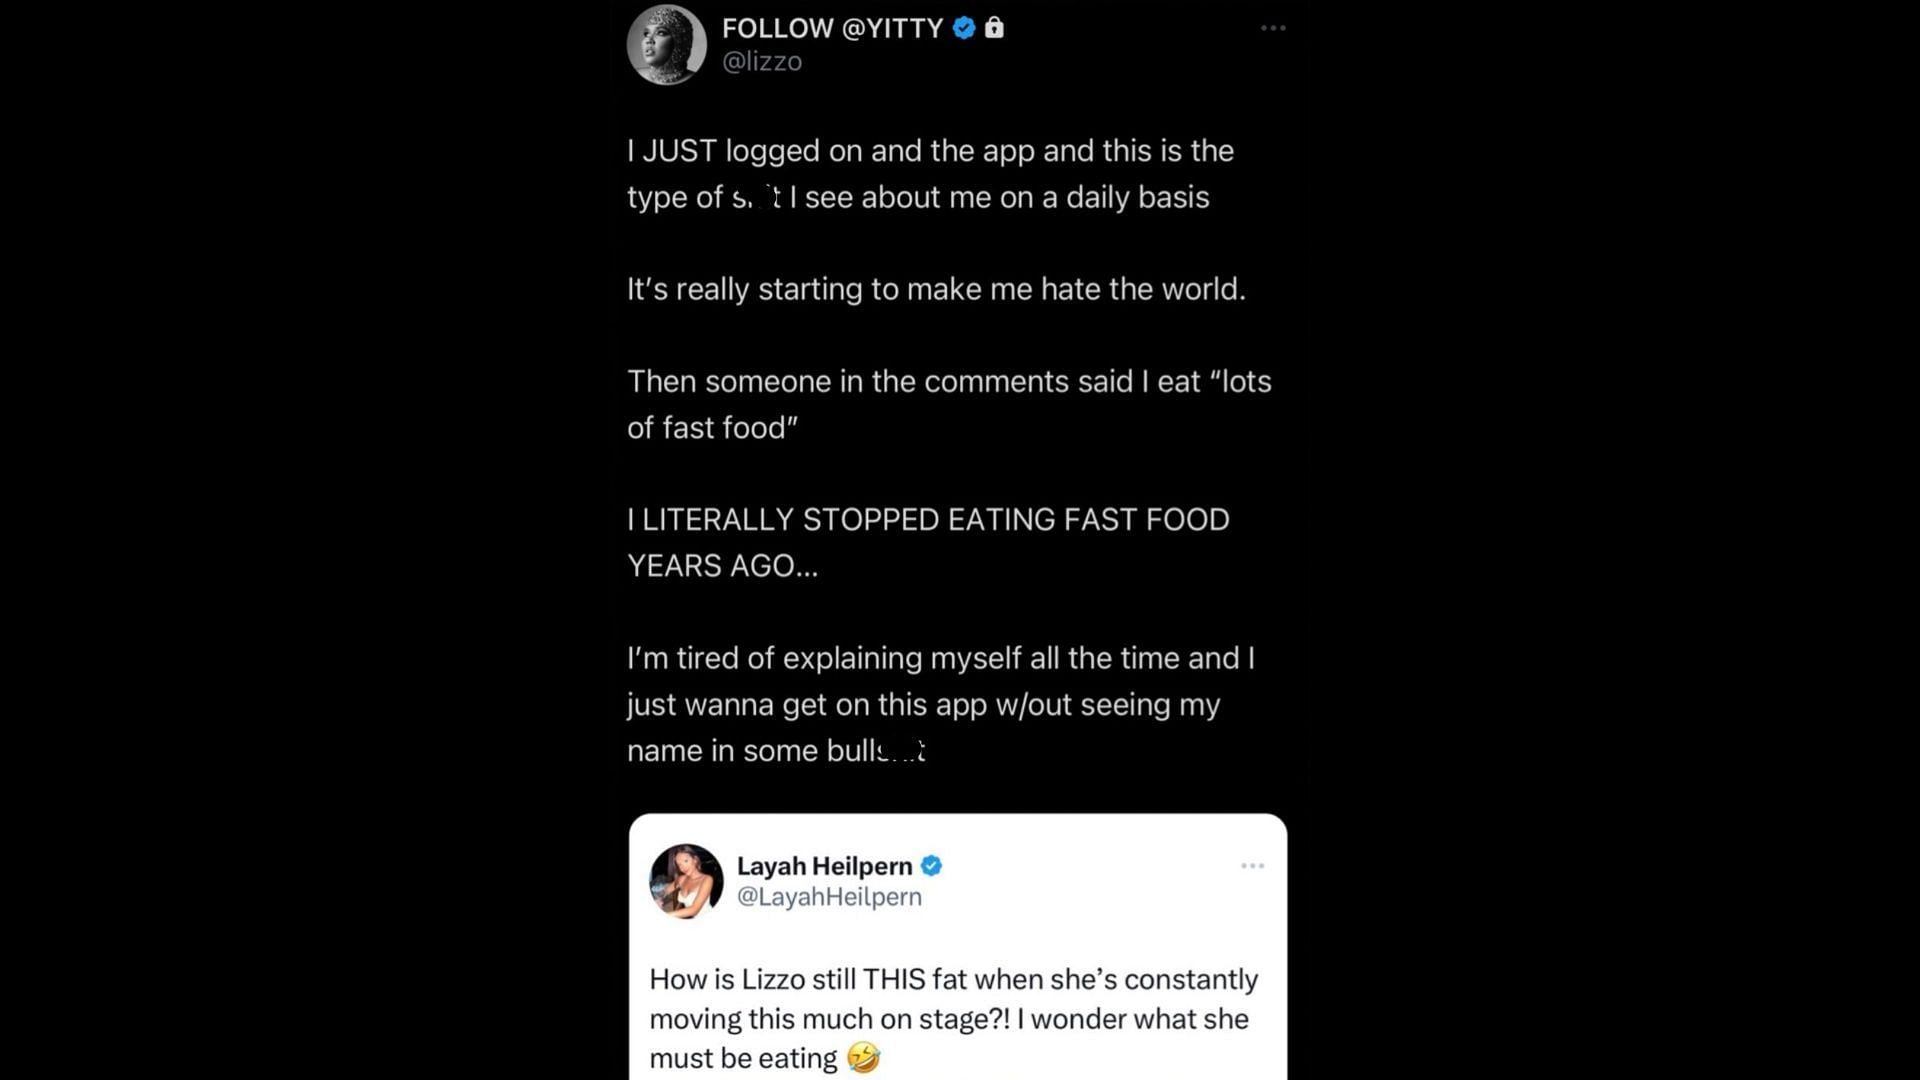 Screenshot of Lizzo's tweet slamming Layah Heilpern's remarks on her body.